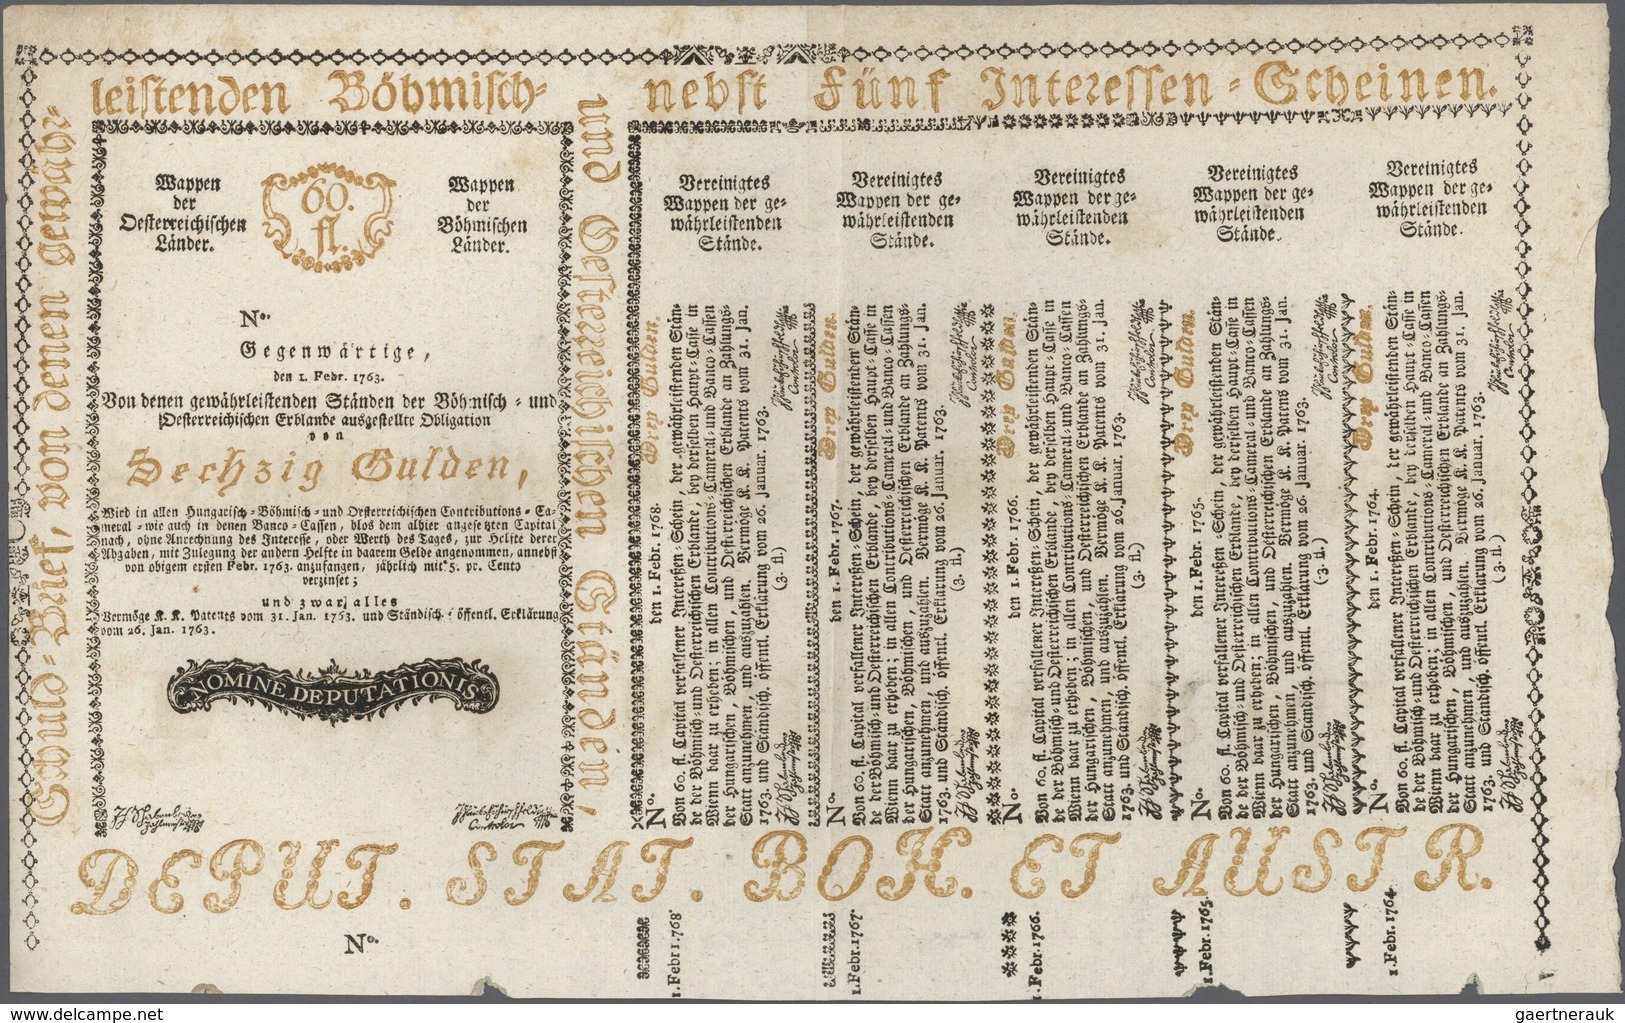 Austria / Österreich: 60 Gulden 1763 Obligation Vienna, PR W8), Complete Sheet In Condition: VF. - Oesterreich